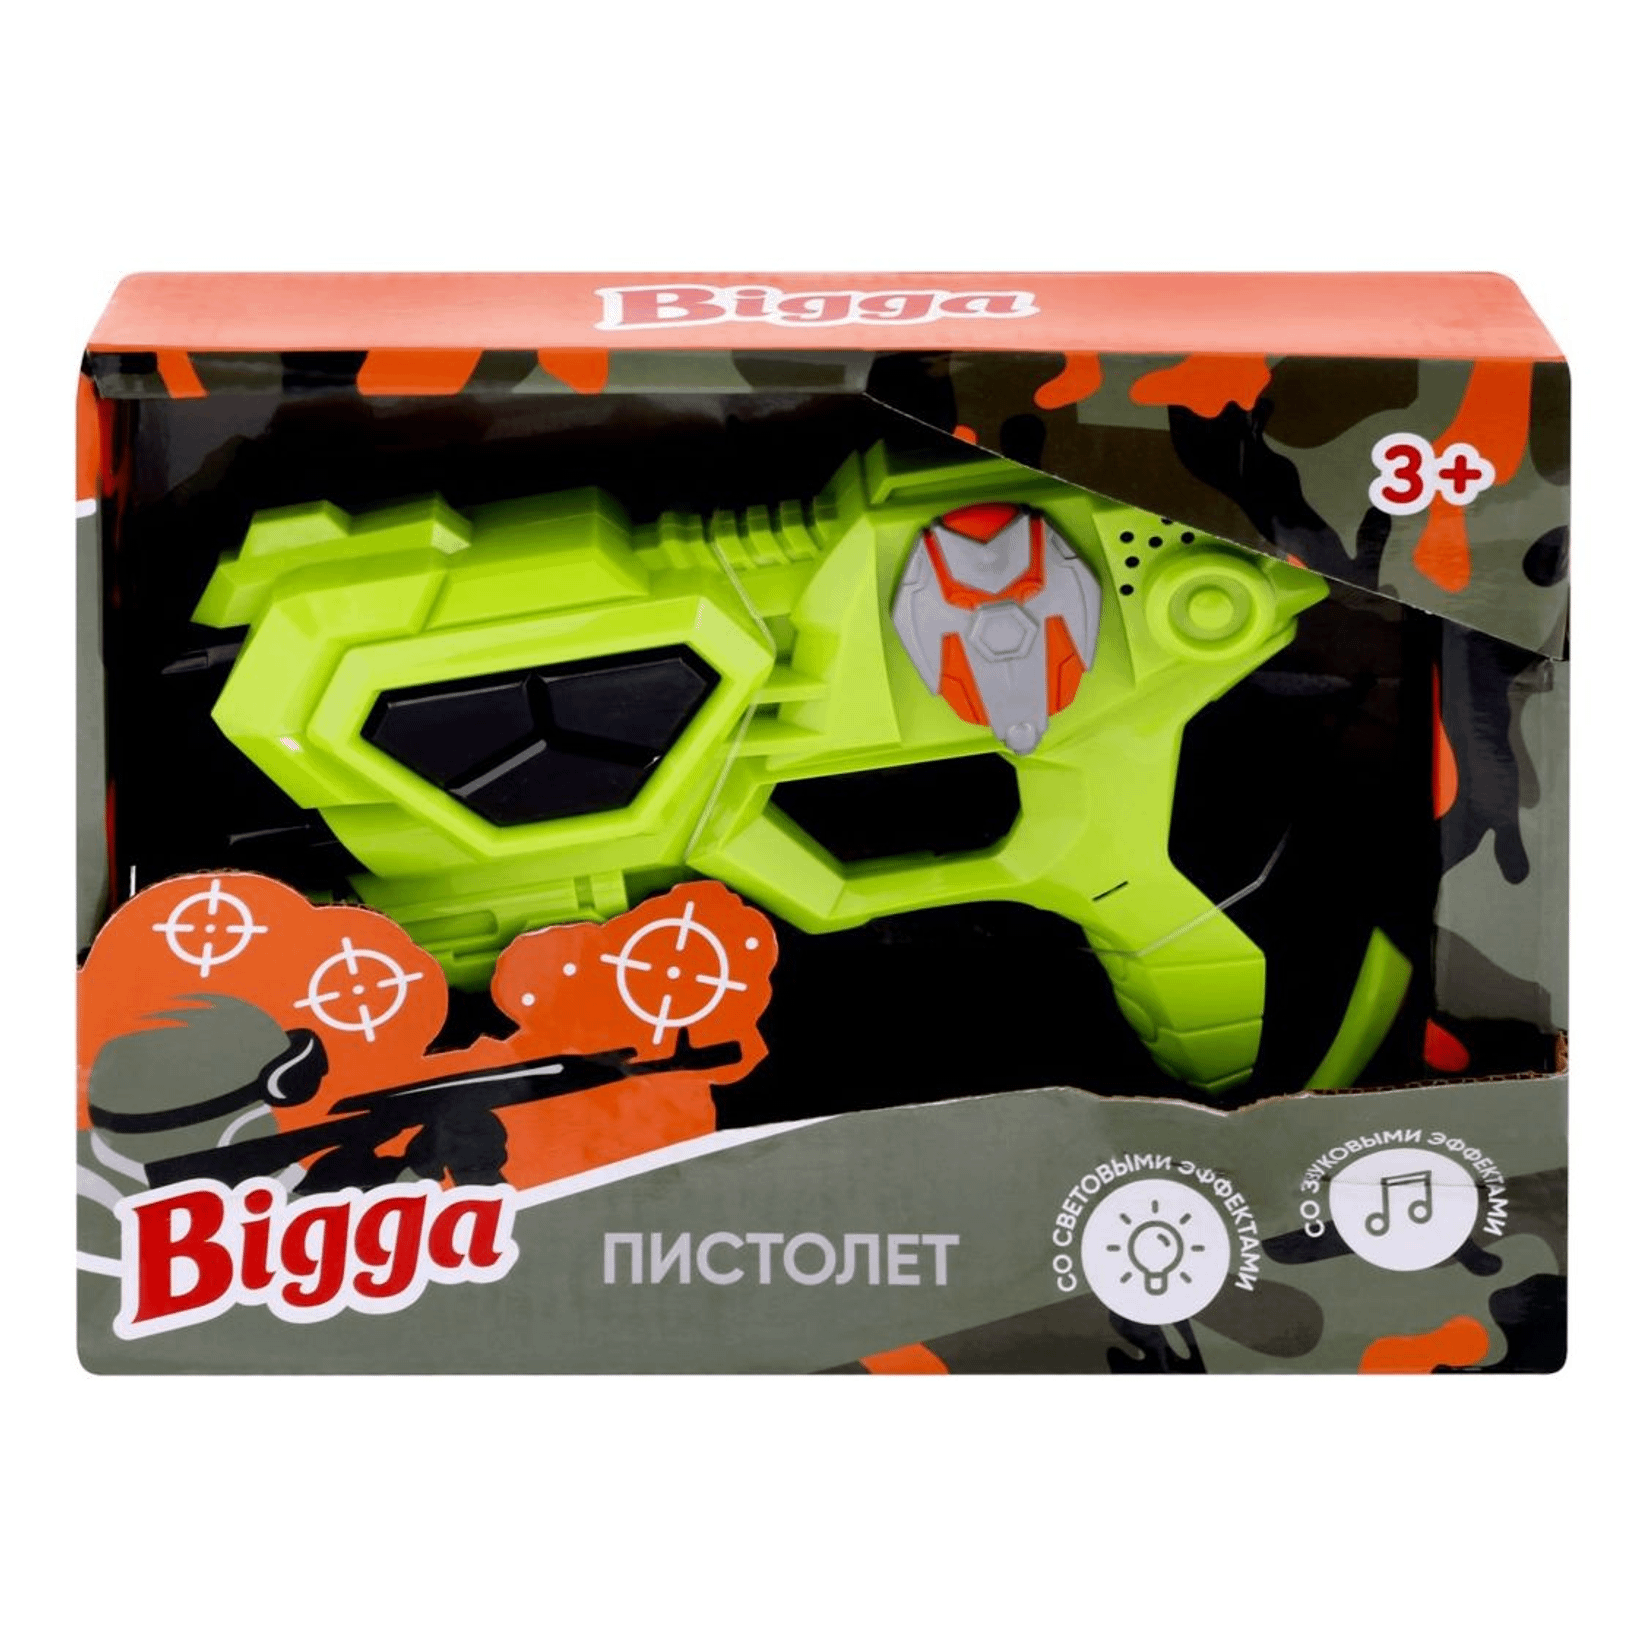 Пистолет игрушечный со световыми и звуковыми эффектами Bigga fisher price ноутбук для малыша со звуковыми и световыми эффектами